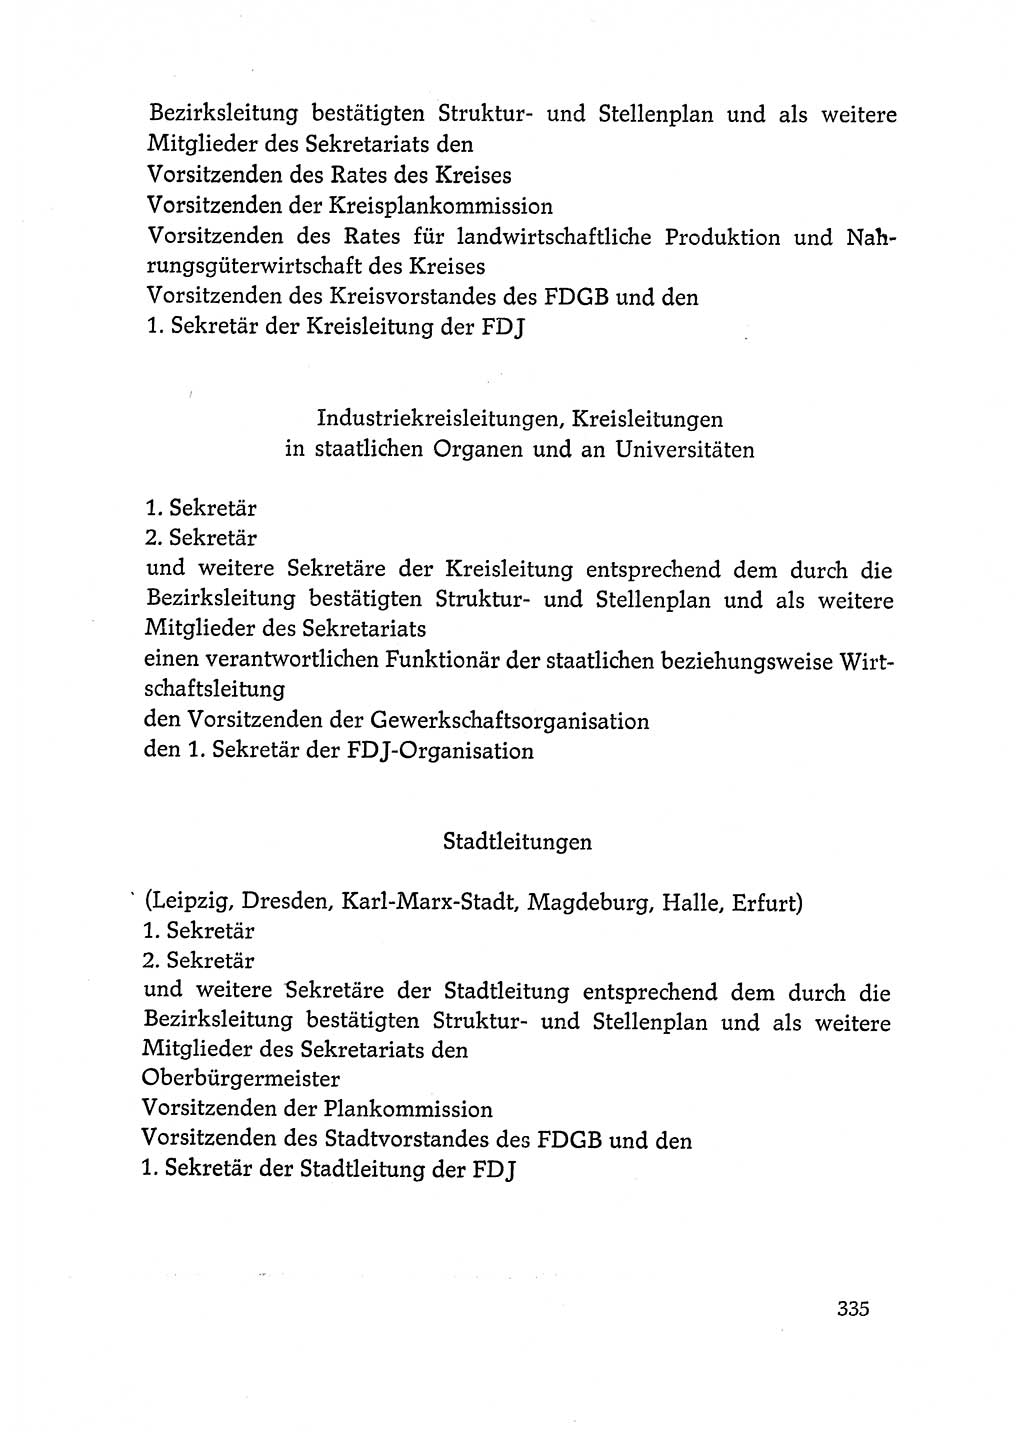 Dokumente der Sozialistischen Einheitspartei Deutschlands (SED) [Deutsche Demokratische Republik (DDR)] 1972-1973, Seite 335 (Dok. SED DDR 1972-1973, S. 335)